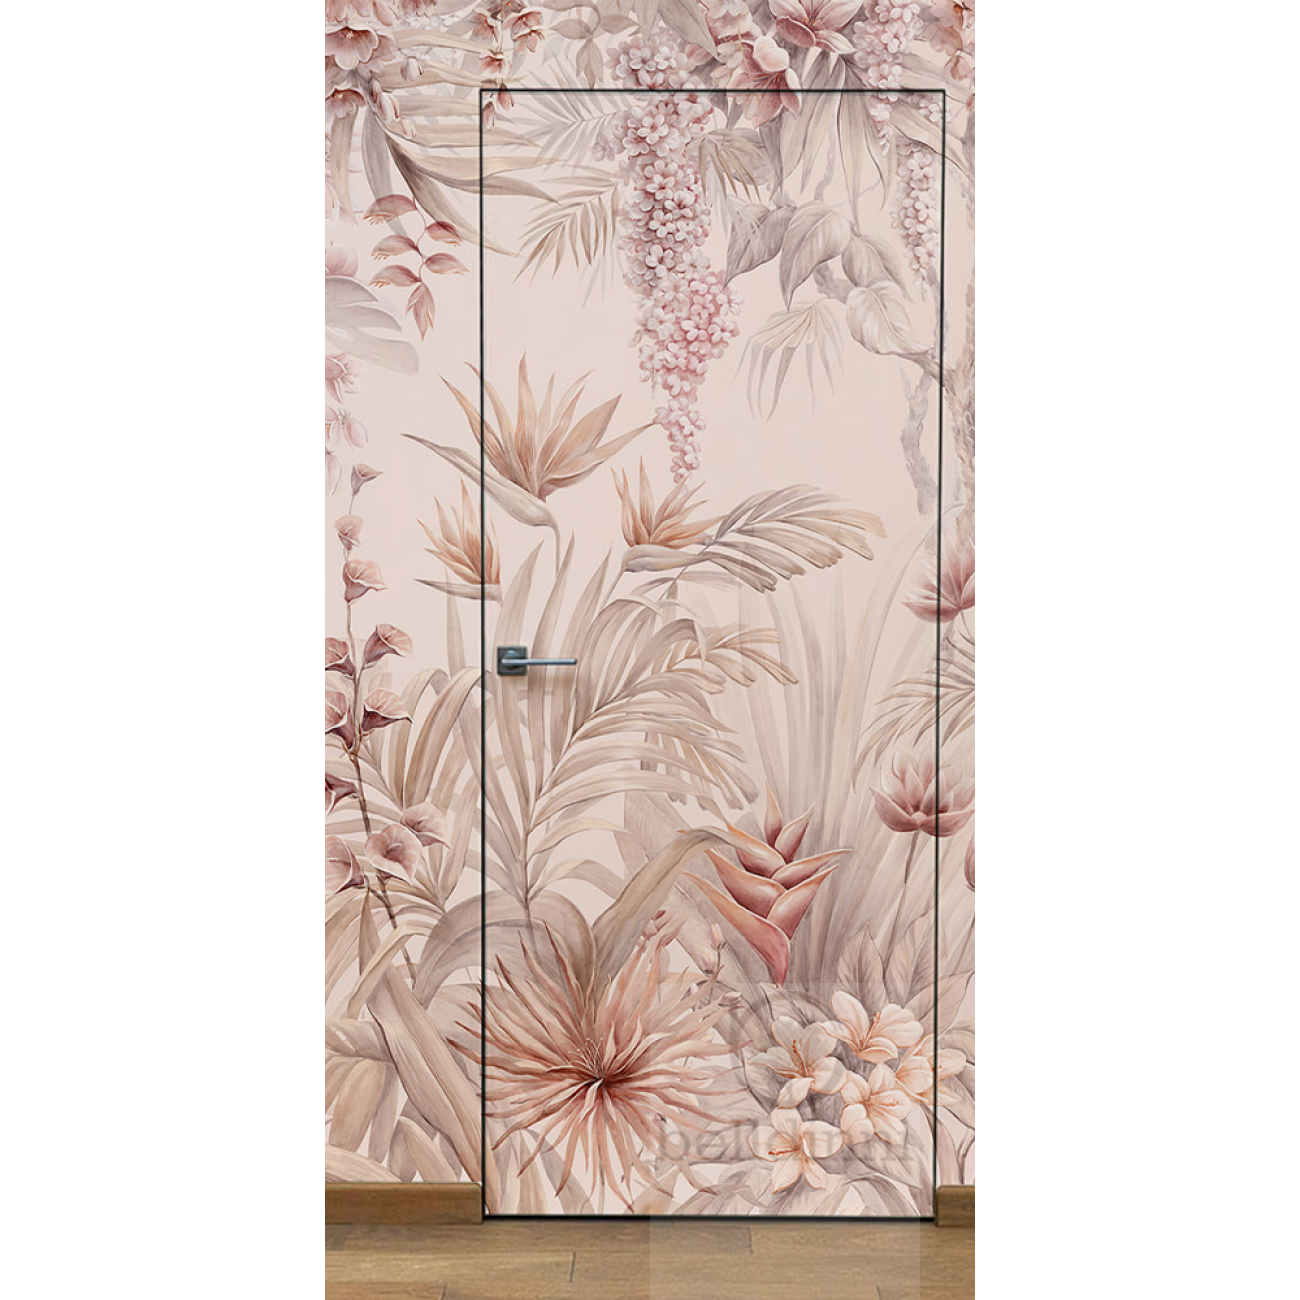 Primed Door Example For Wallpapering №3